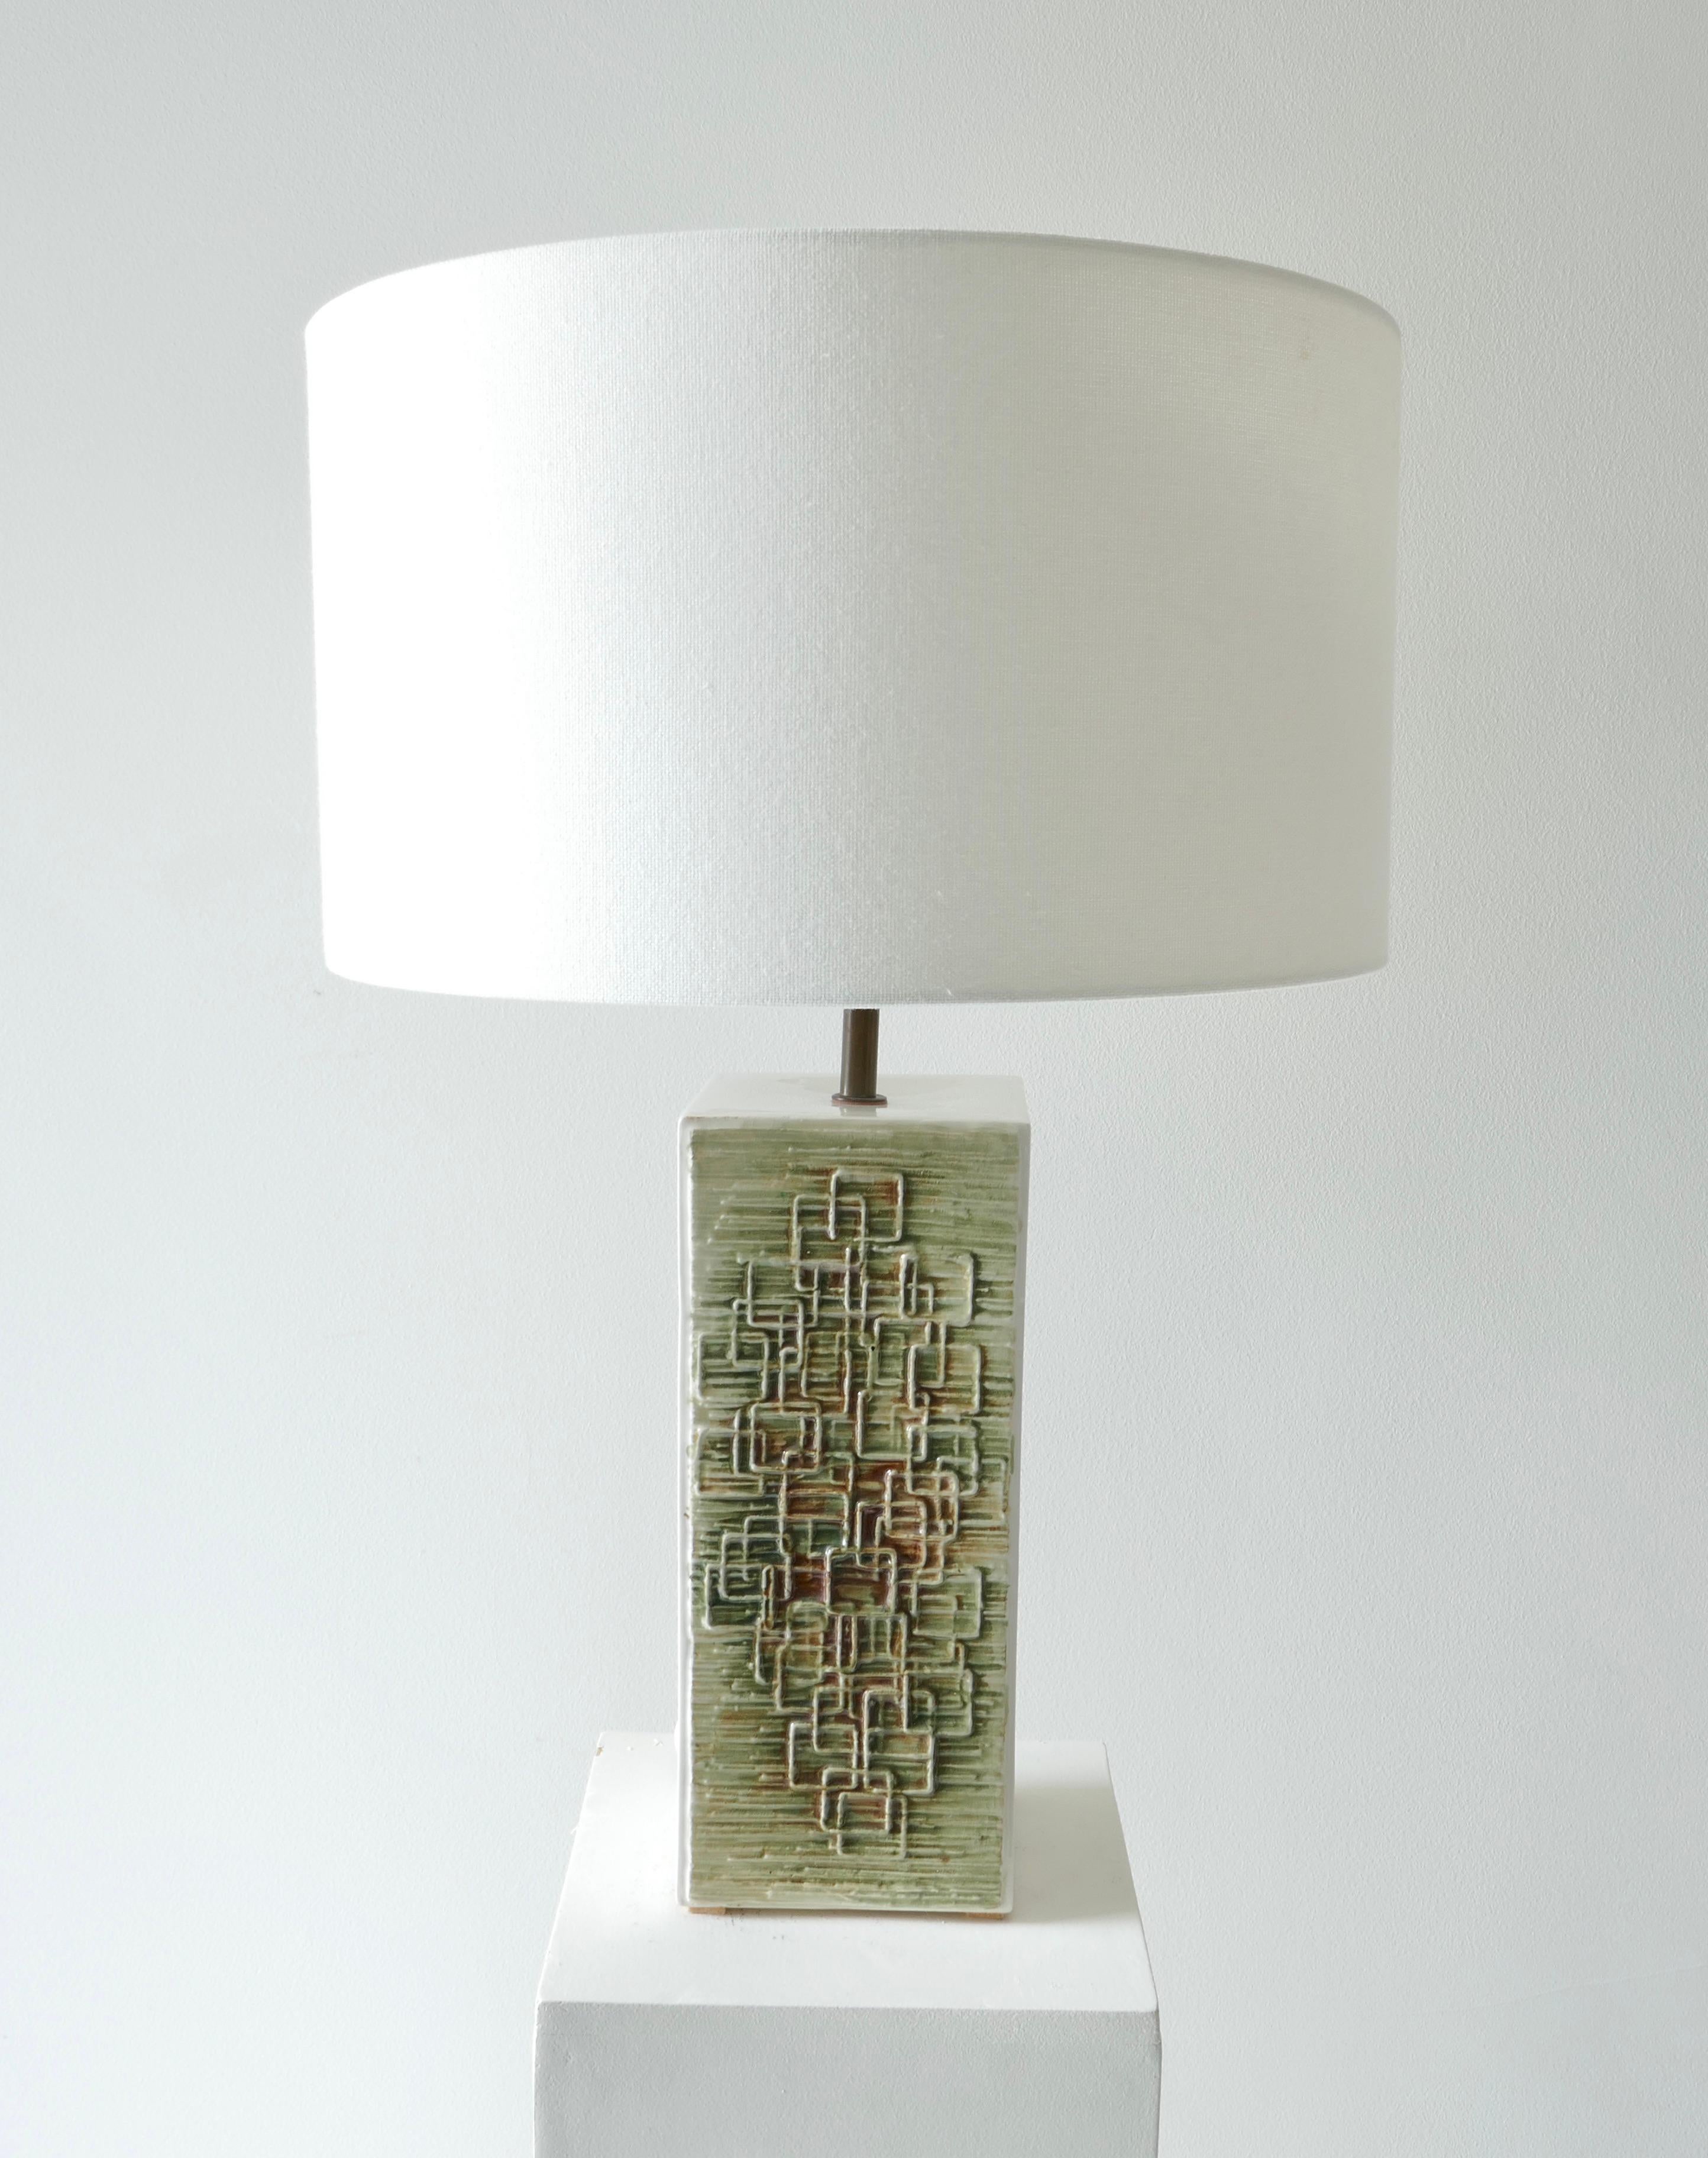 1970er Jahre deutsche Keramiklampe
Weißer Sockel mit 2 Seiten mit geometrischem Relief auf grünem Hintergrund mit einem Hauch von Braun im kubistischen Stil.

Maße: Lampenfuß 10 x 10 x H27cm mit Lampenschirm ist die Gesamthöhe 57cm.

 